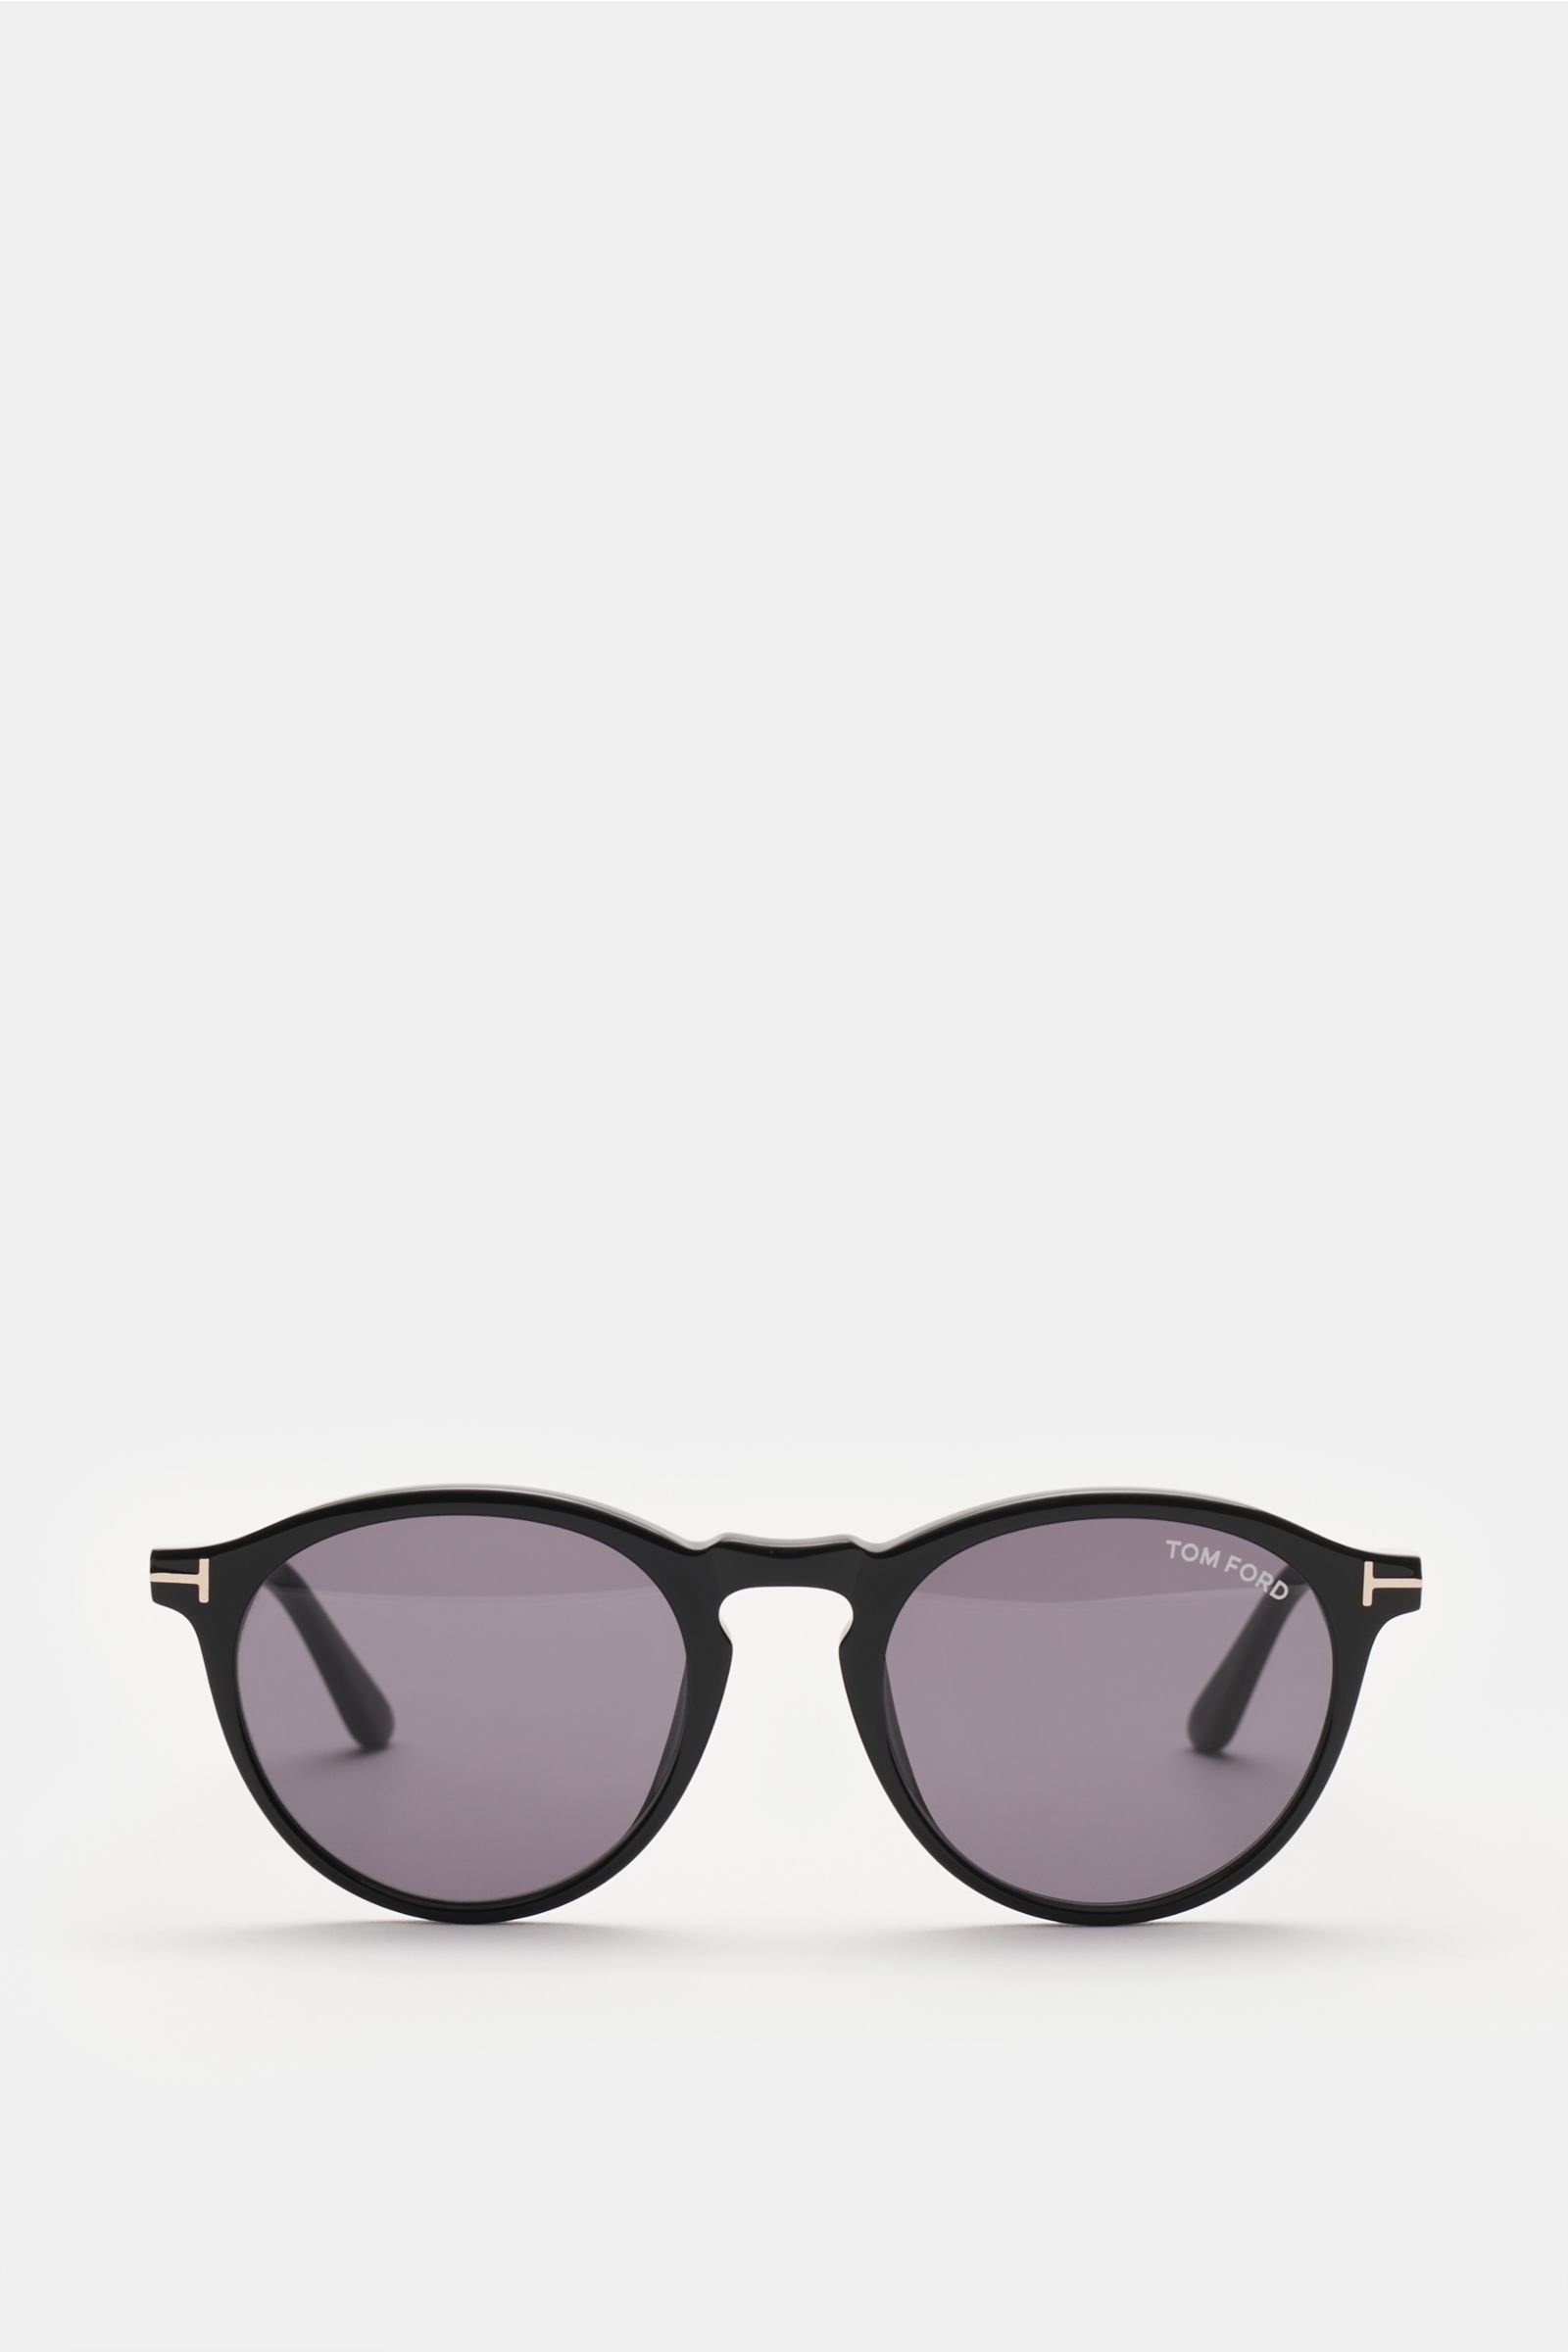 Sonnenbrille 'Aurele' schwarz/grau